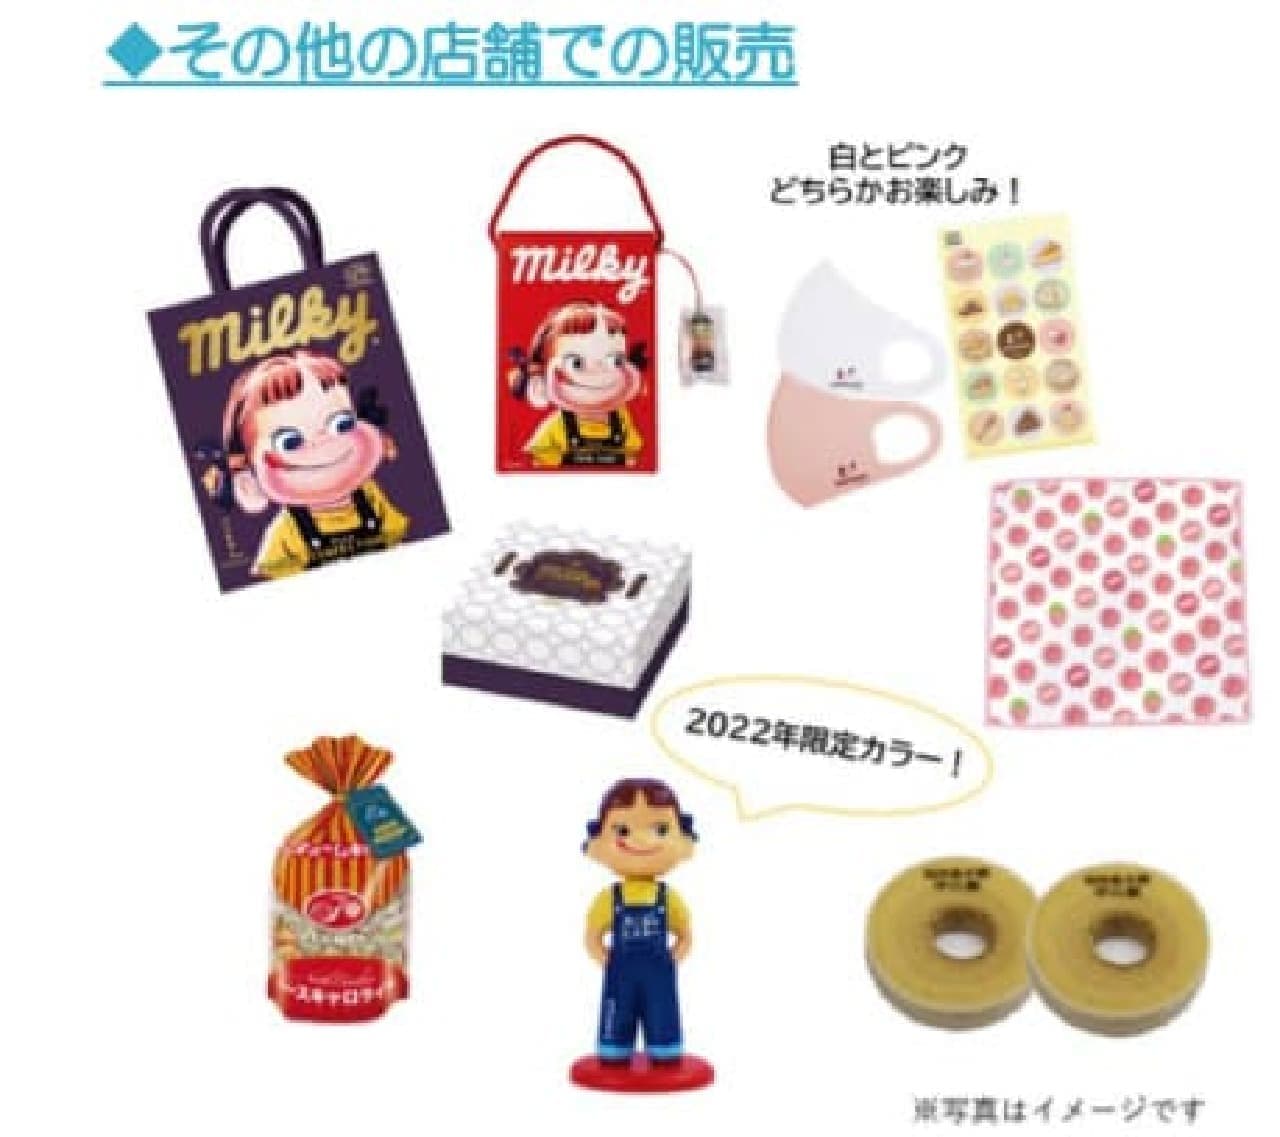 Western confectionery Fujiya “2022 New Year lucky bag”